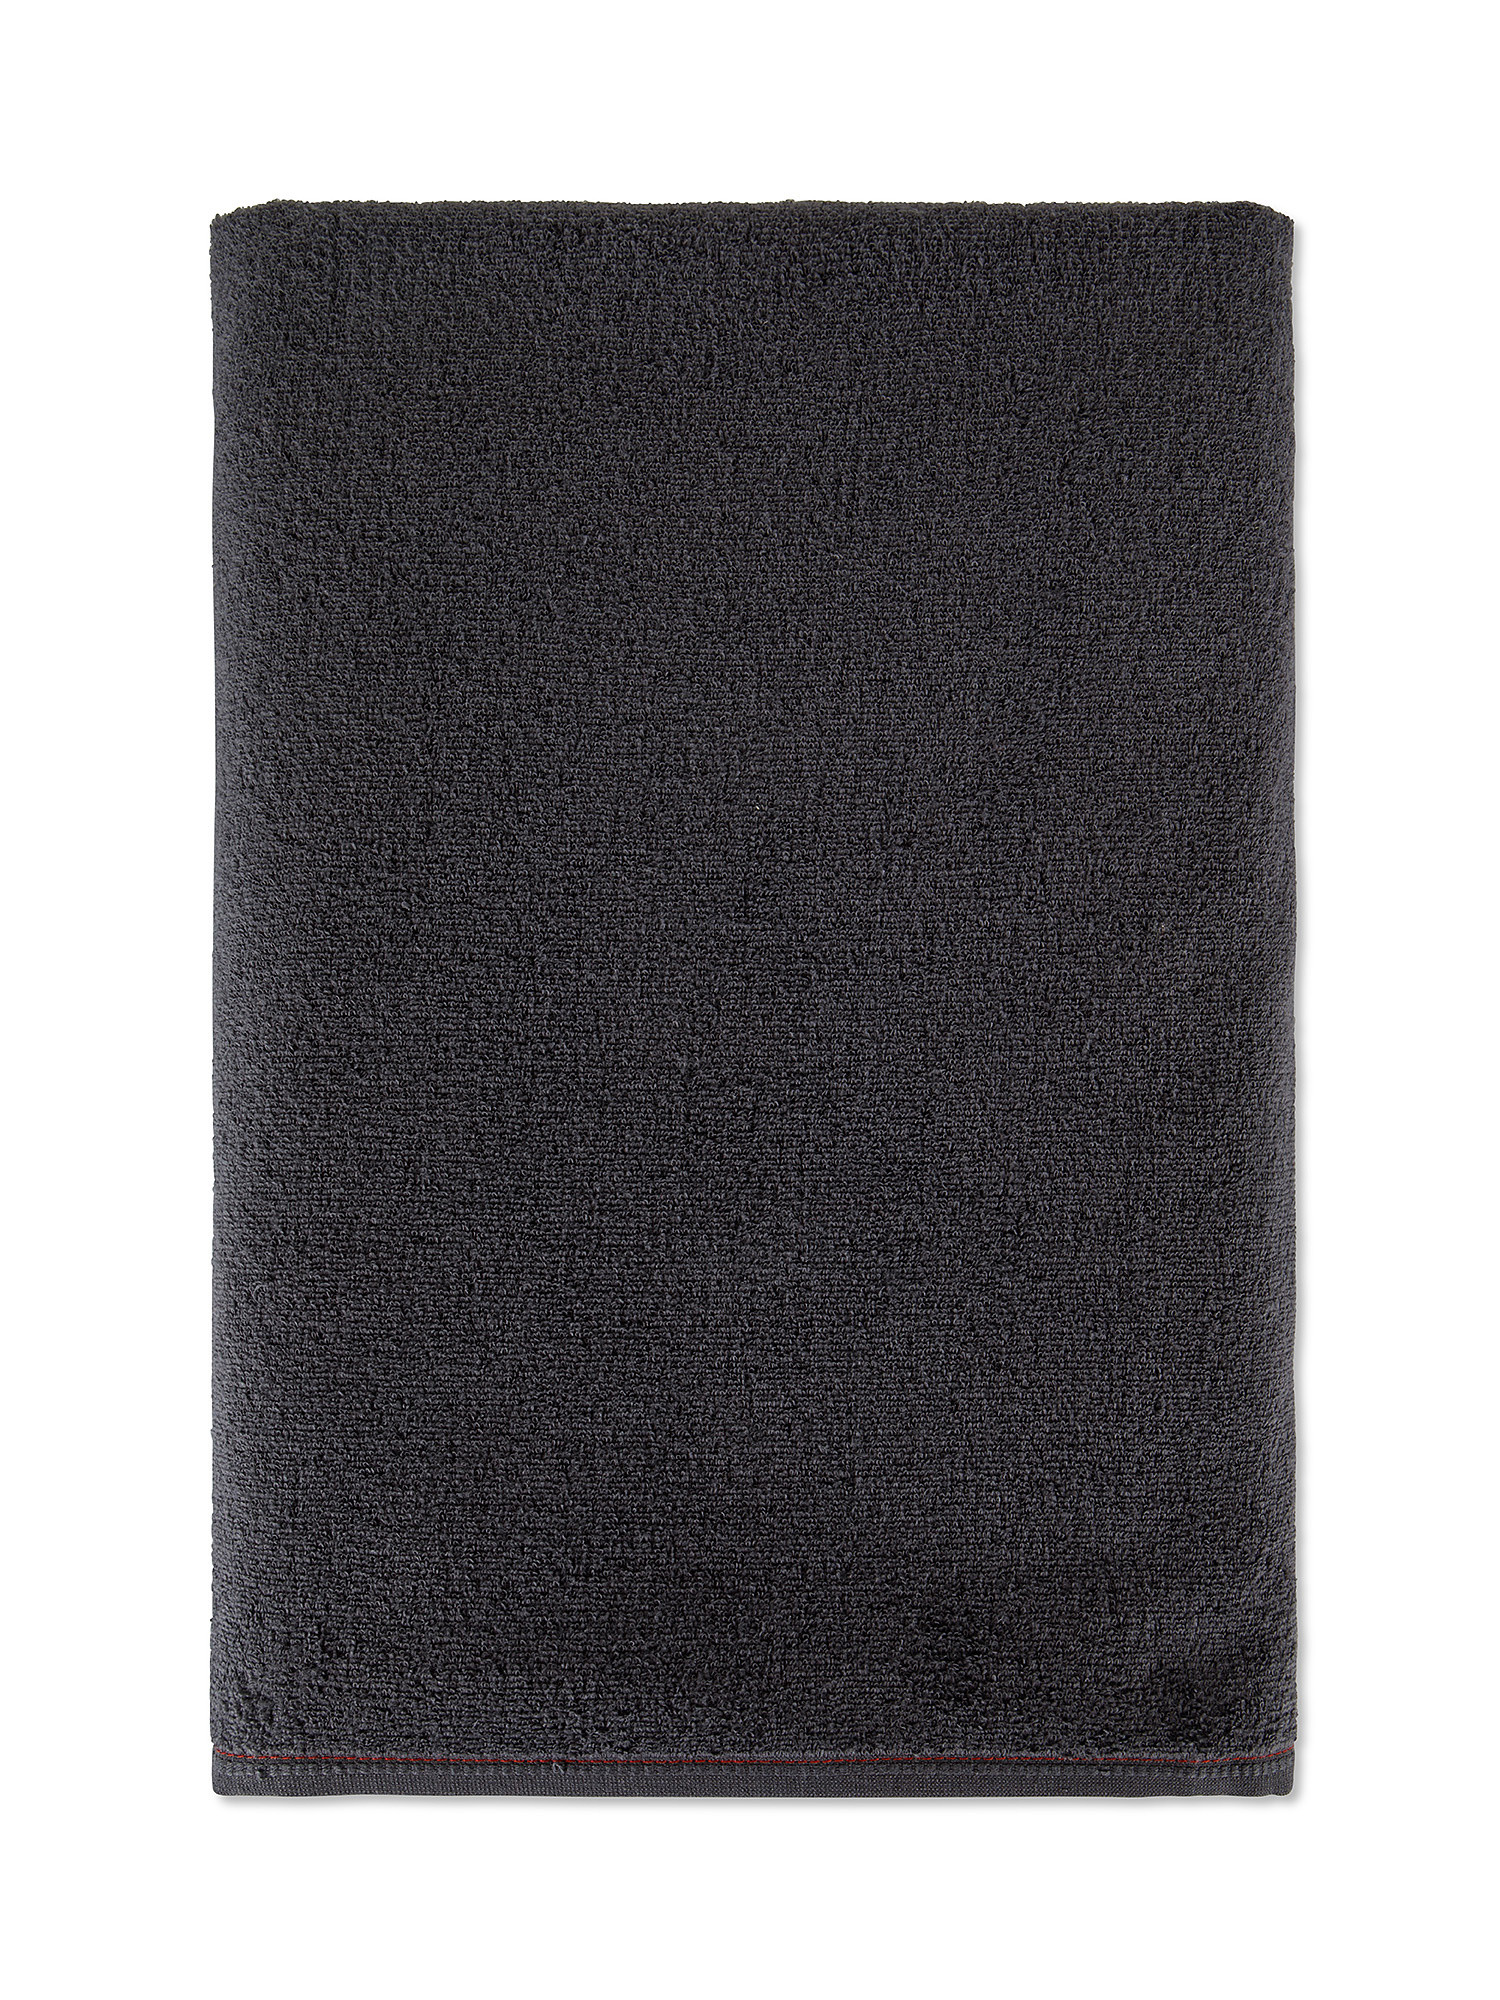 Asciugamano spugna sottile Thermae, Grigio scuro, large image number 0